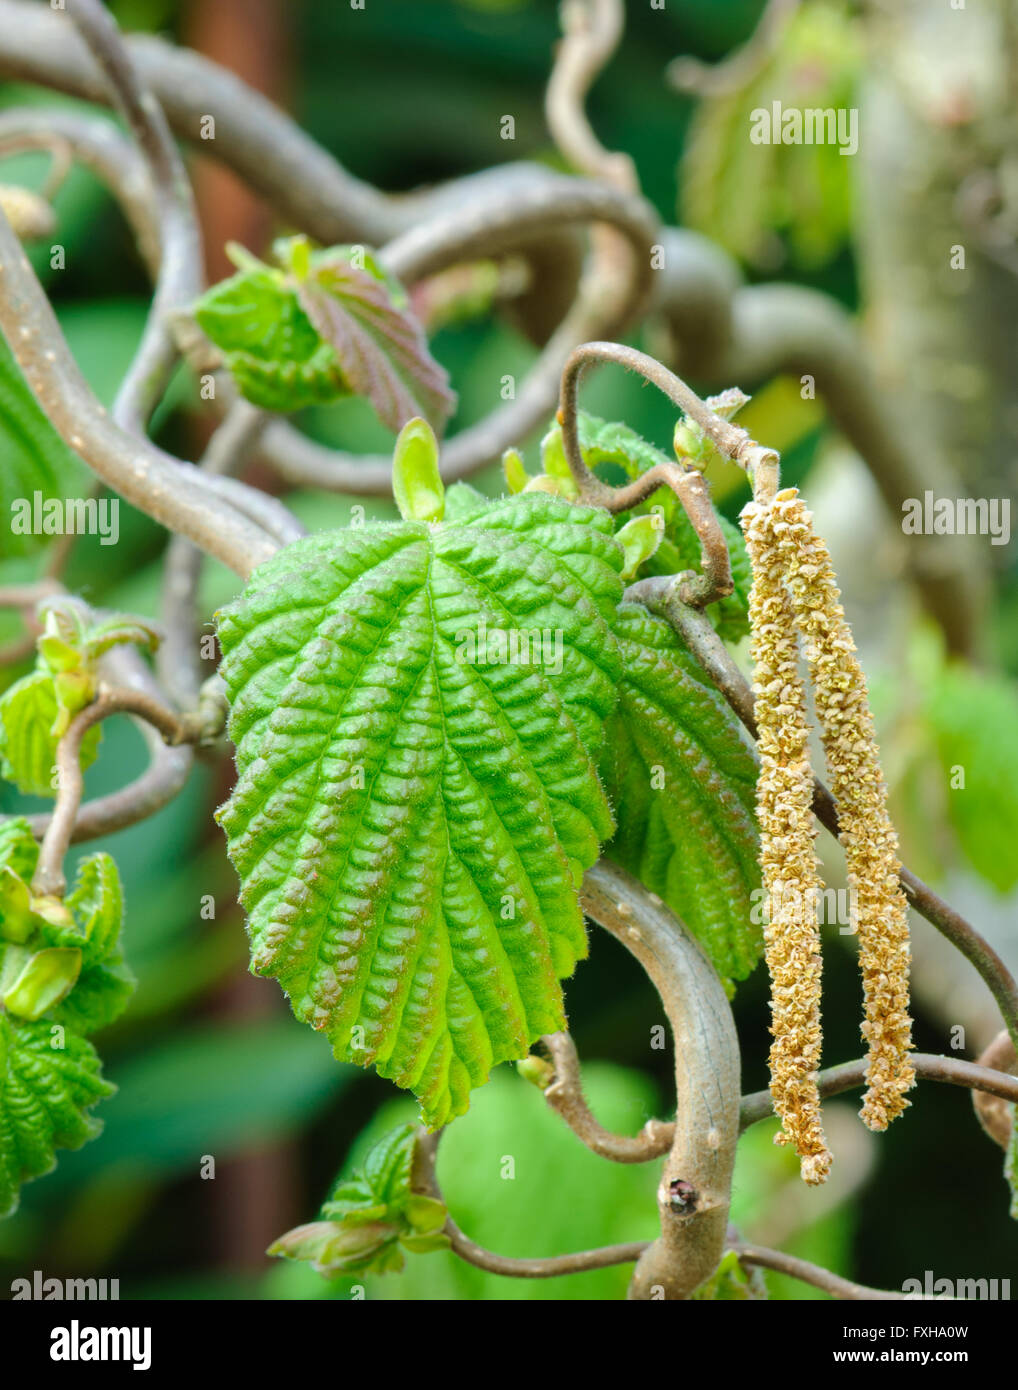 Haselnuss-Zweig, Corylus Avellana Contorta, mit Blättern und männlicher Blütenstand Stockfoto